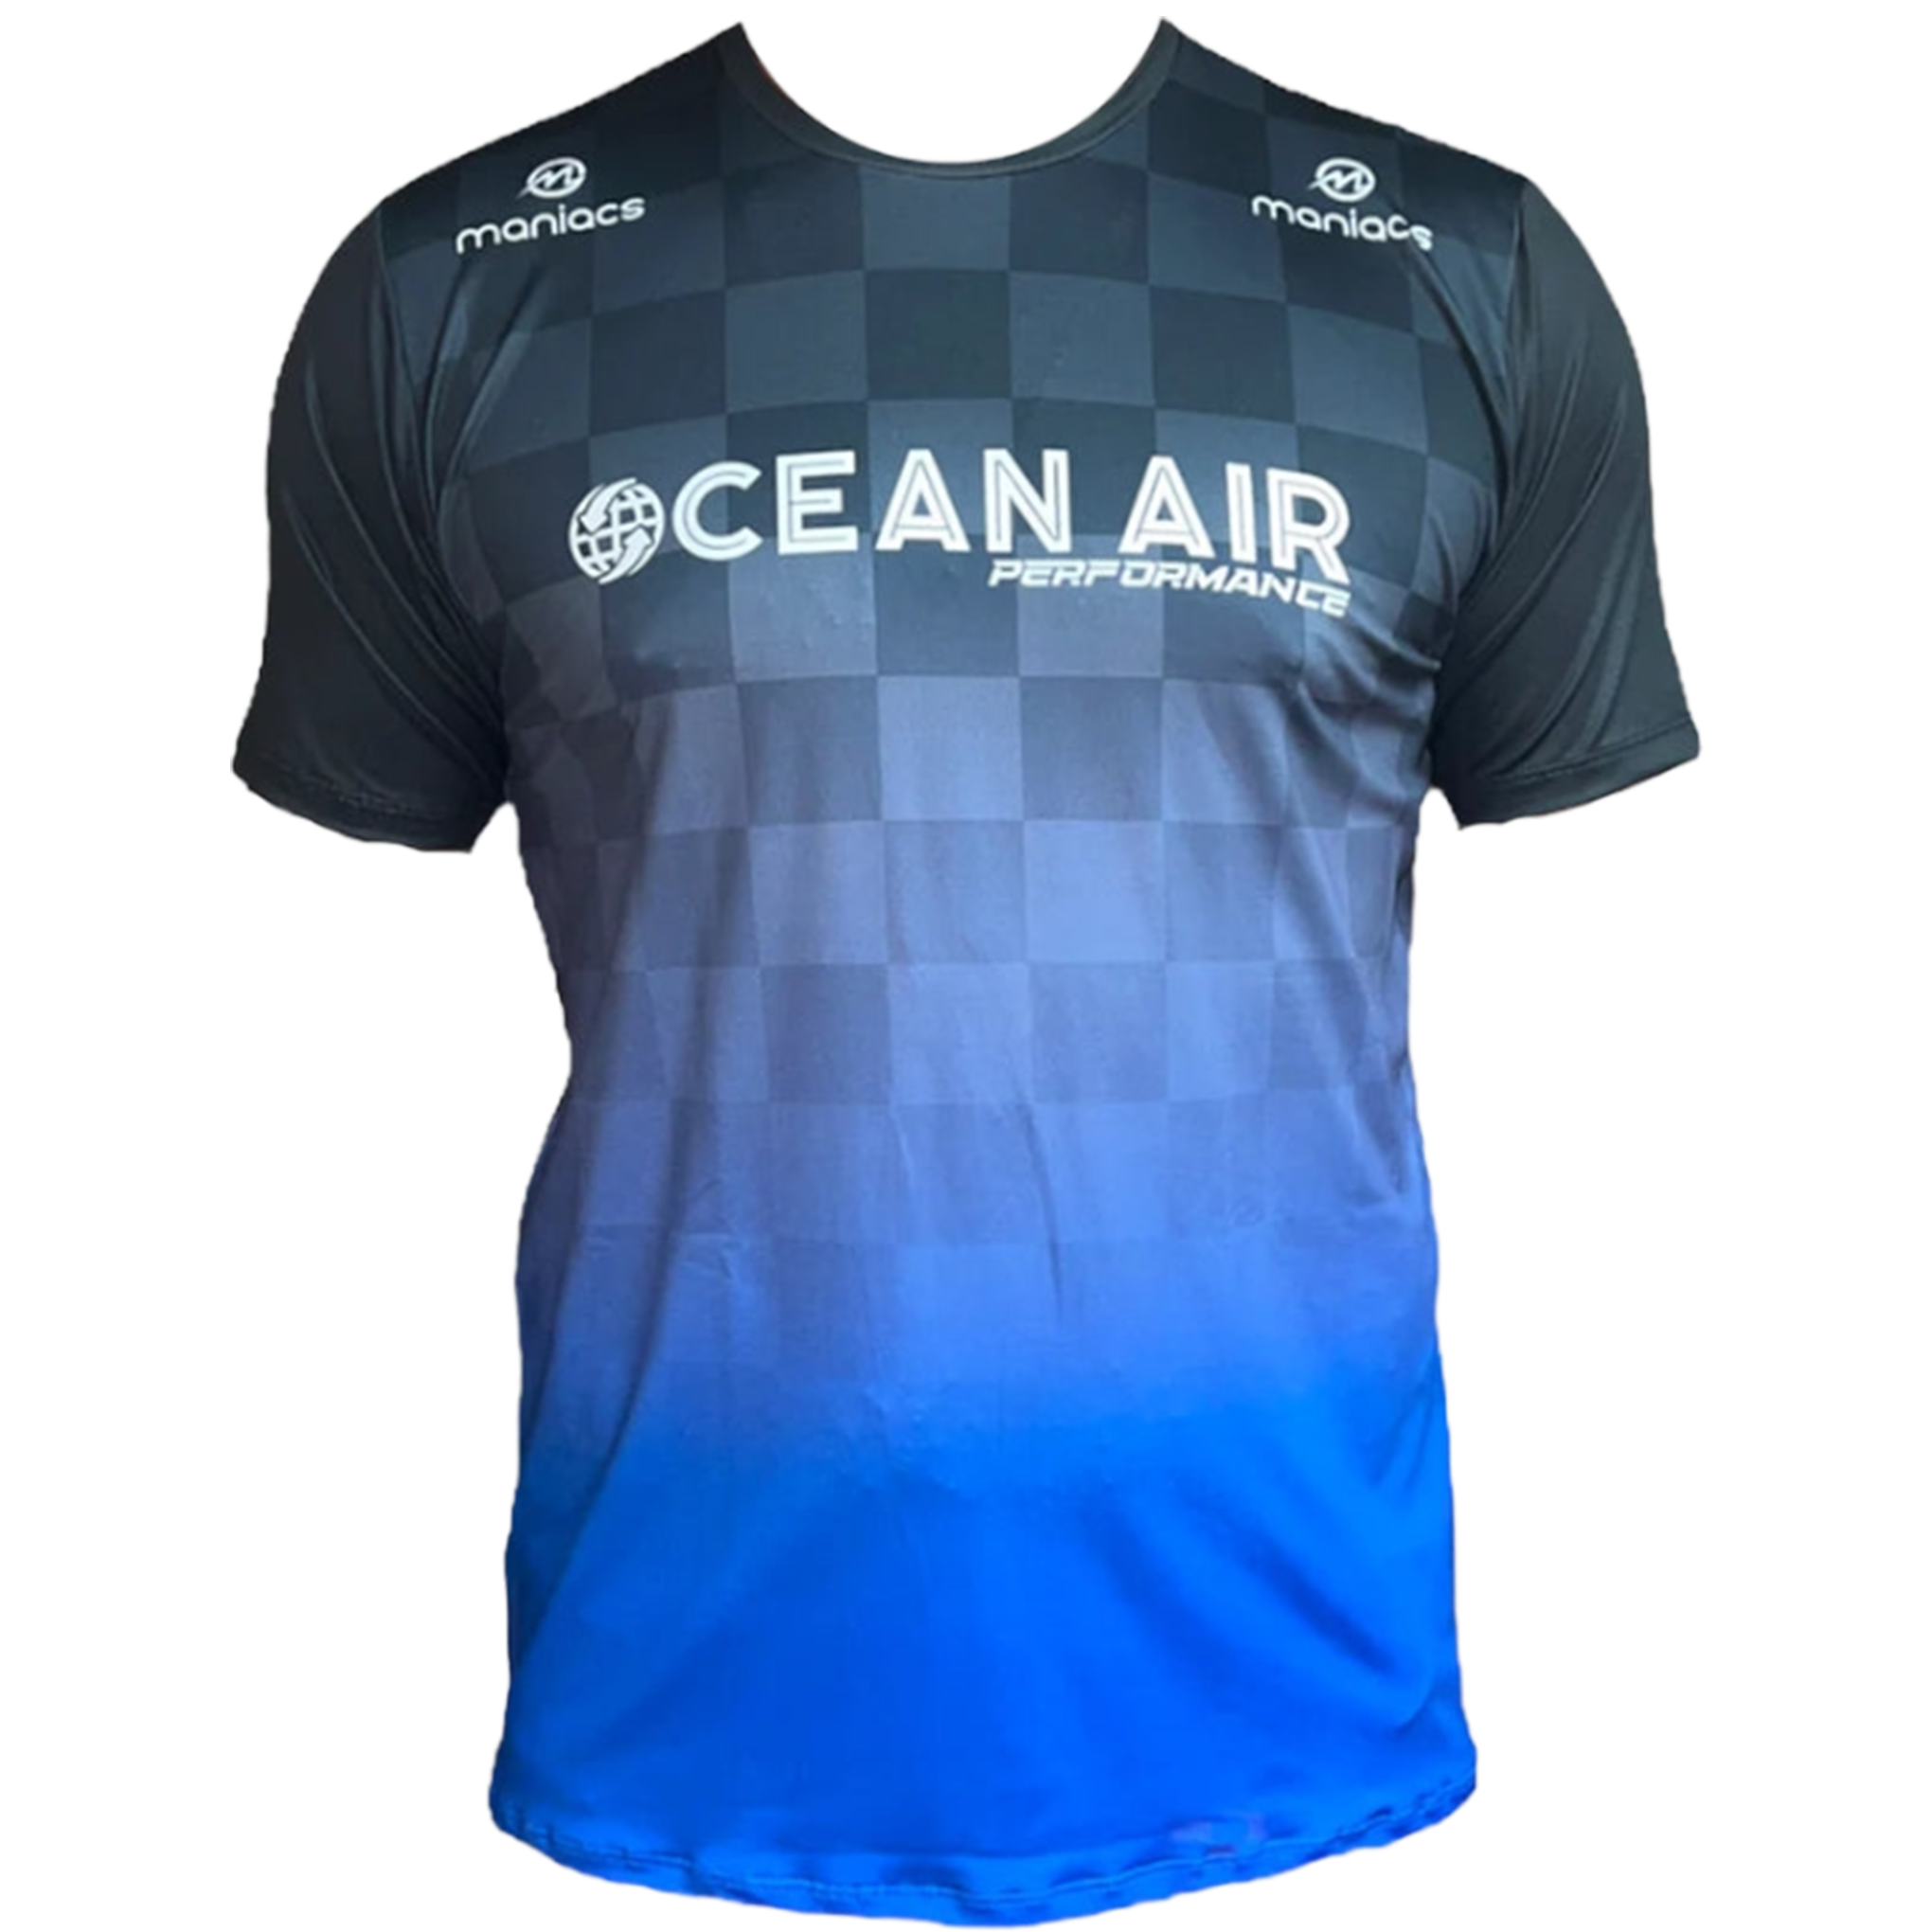 Ocean Air Special Edition T-Shirt - Nacho Guedez